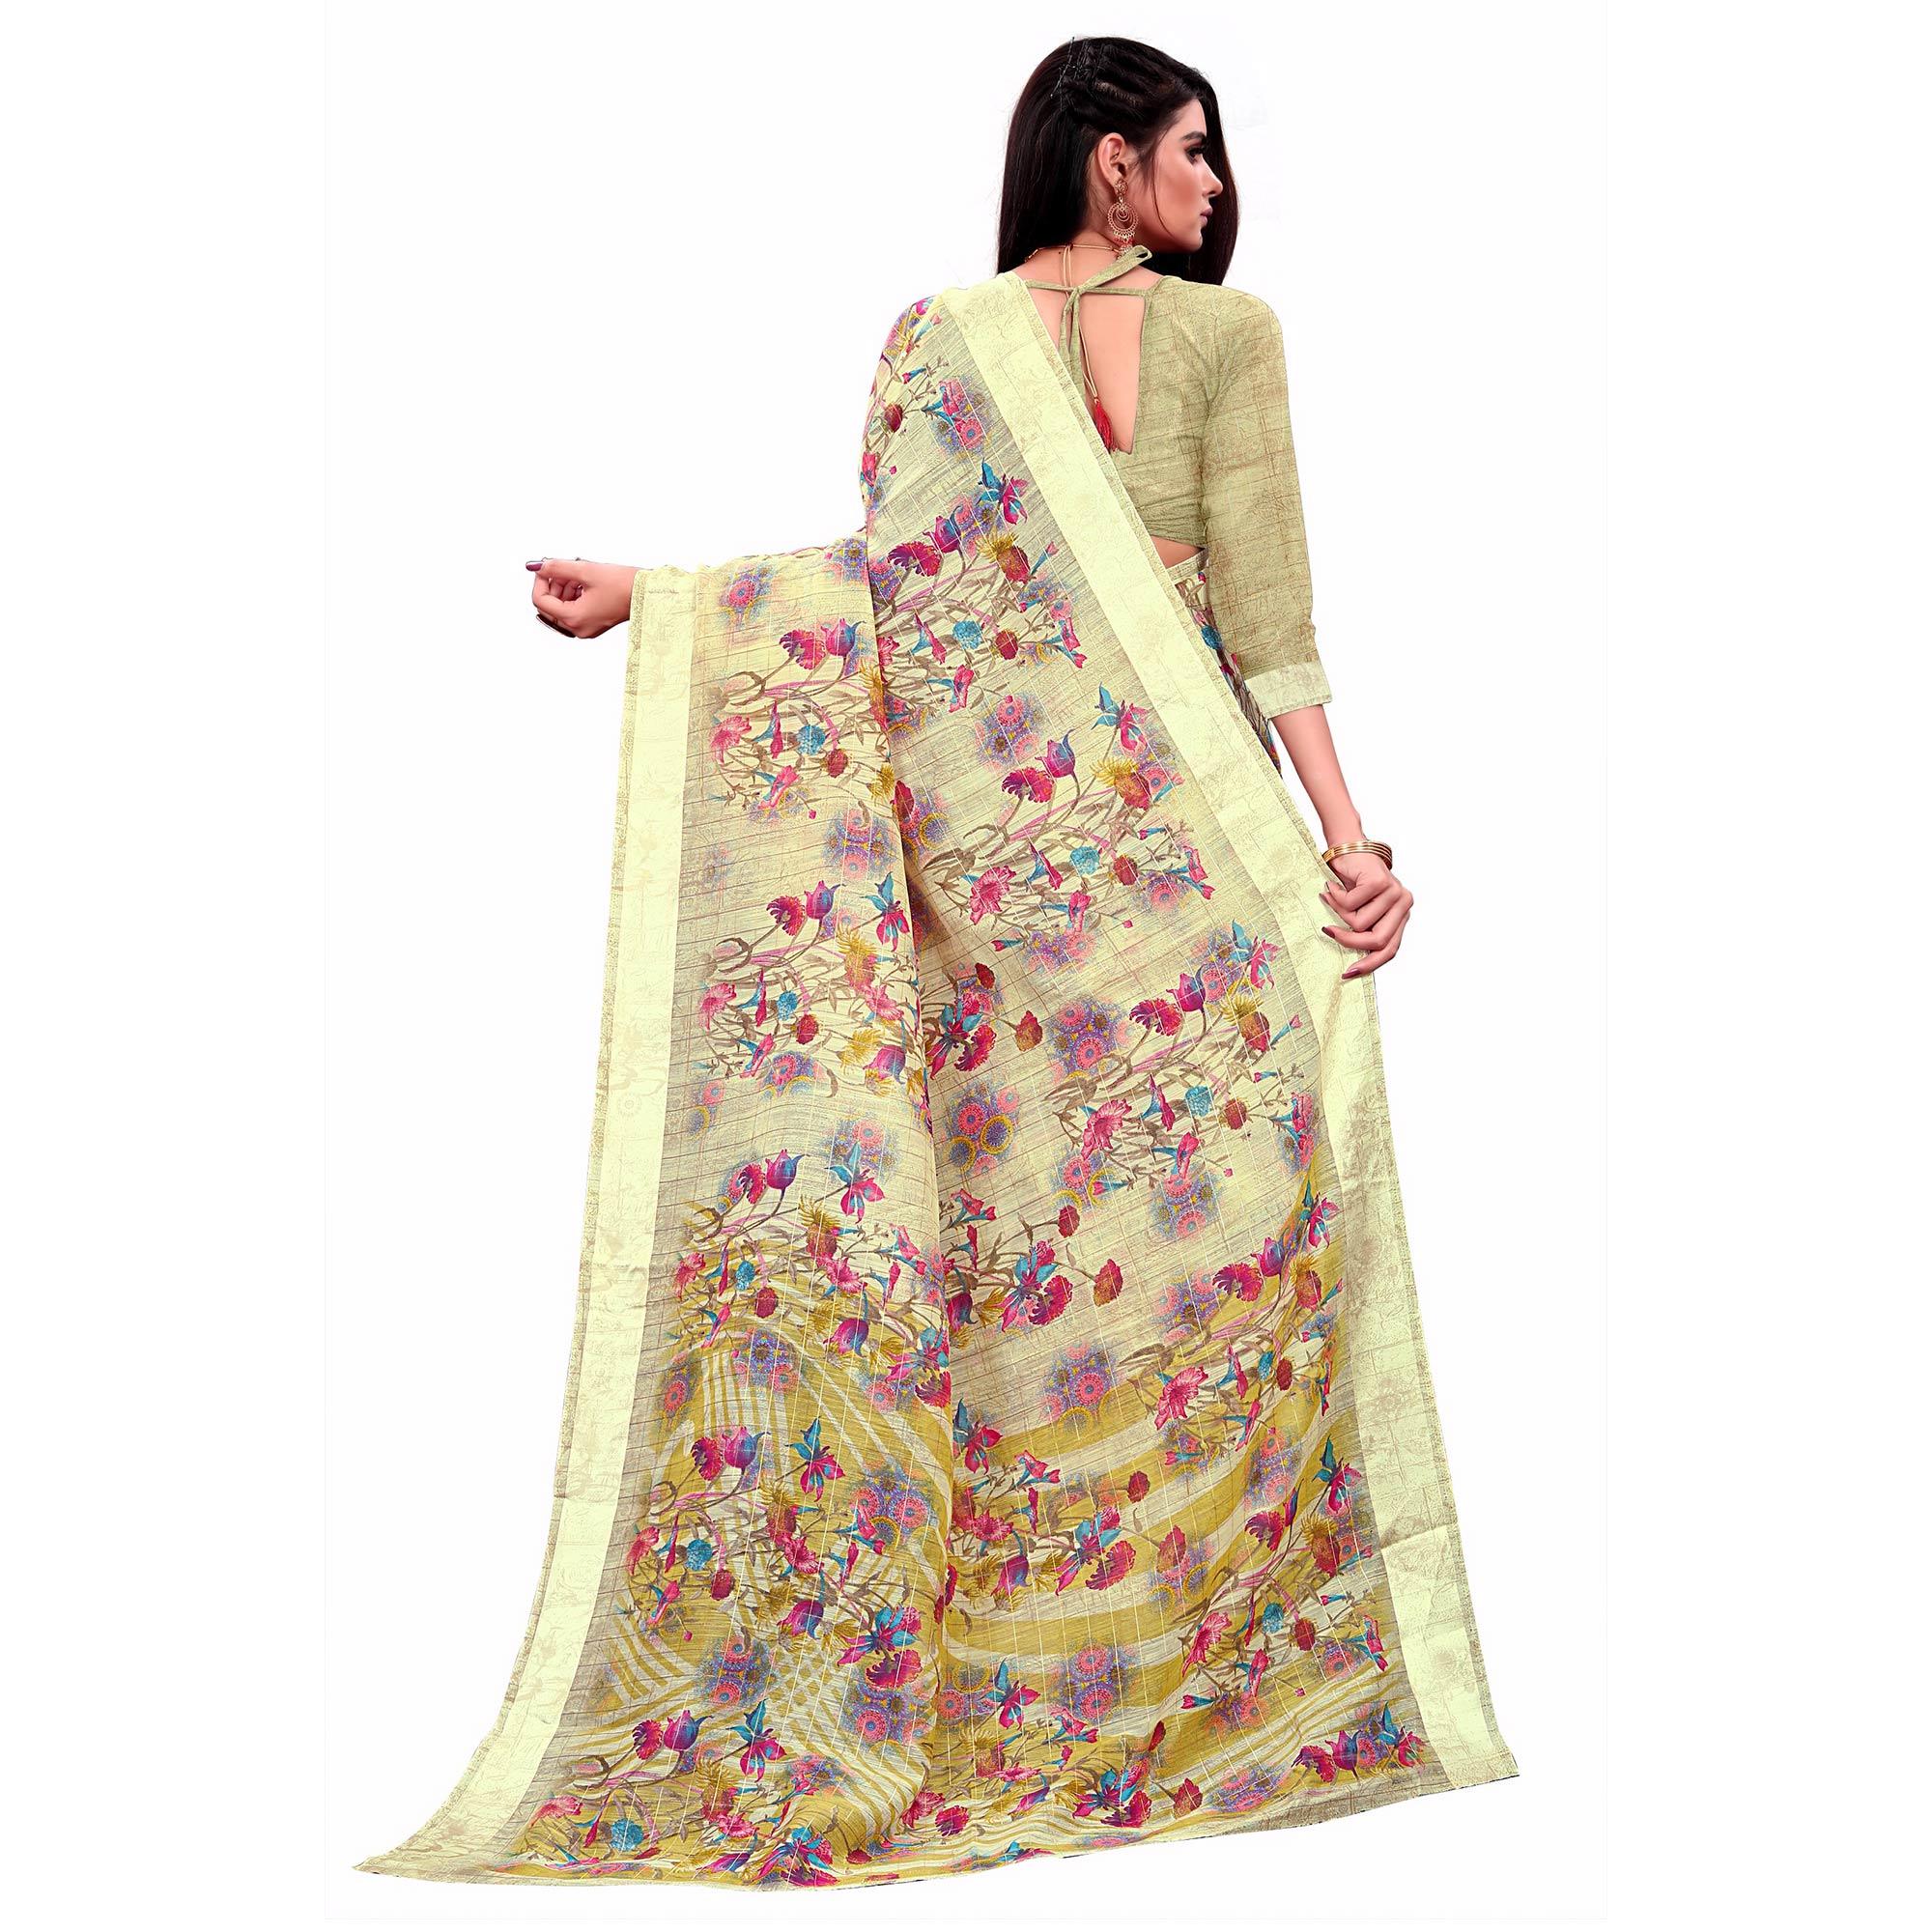 Trendy Cream Colored Casual Wear Printed Cotton Saree - Peachmode